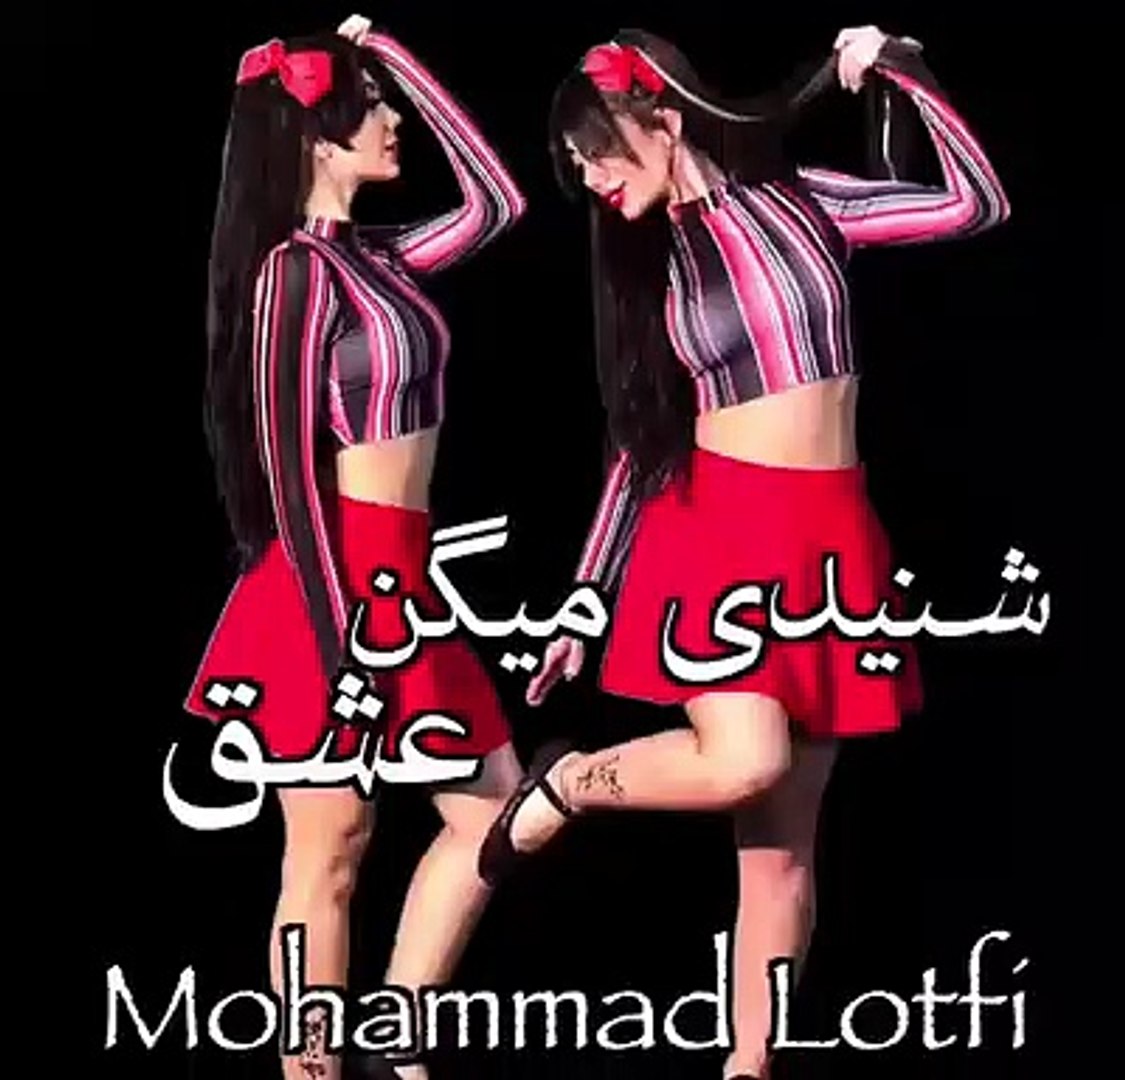 رقص دختر ایرانی با آهنگ شنیدی میگن عشق - video Dailymotion